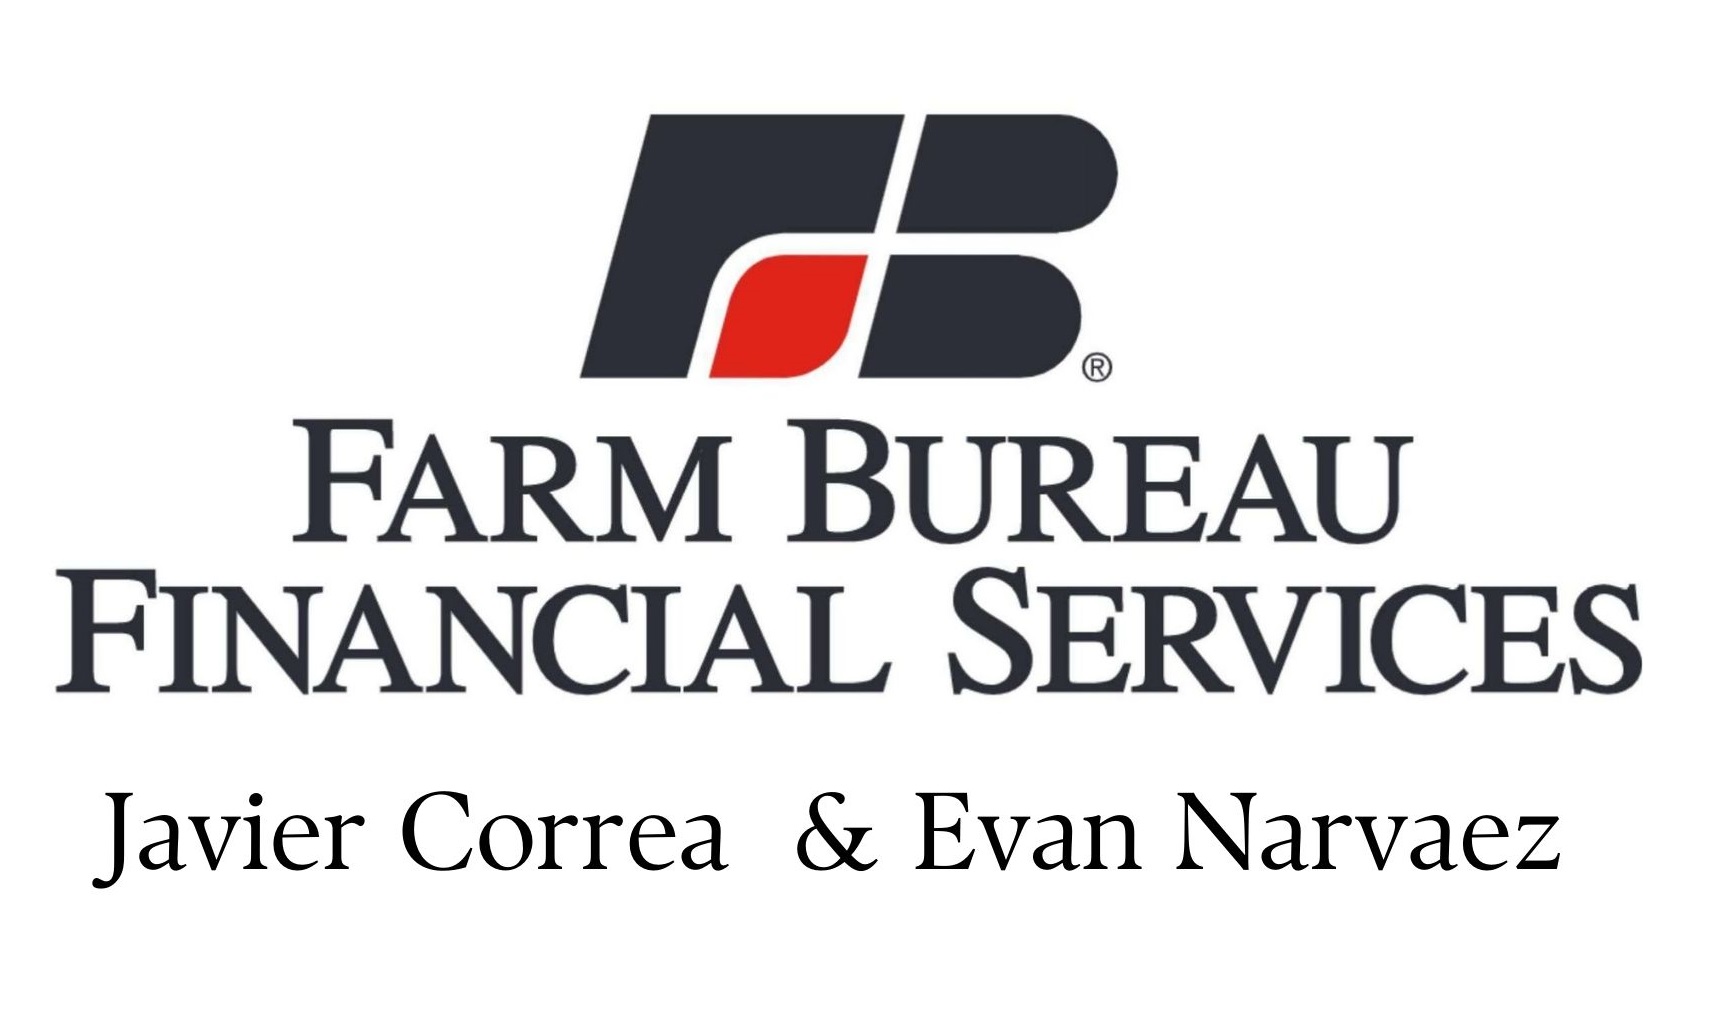 Servicios financieros de A Farm Bureau (Nivel Tony Bennett)